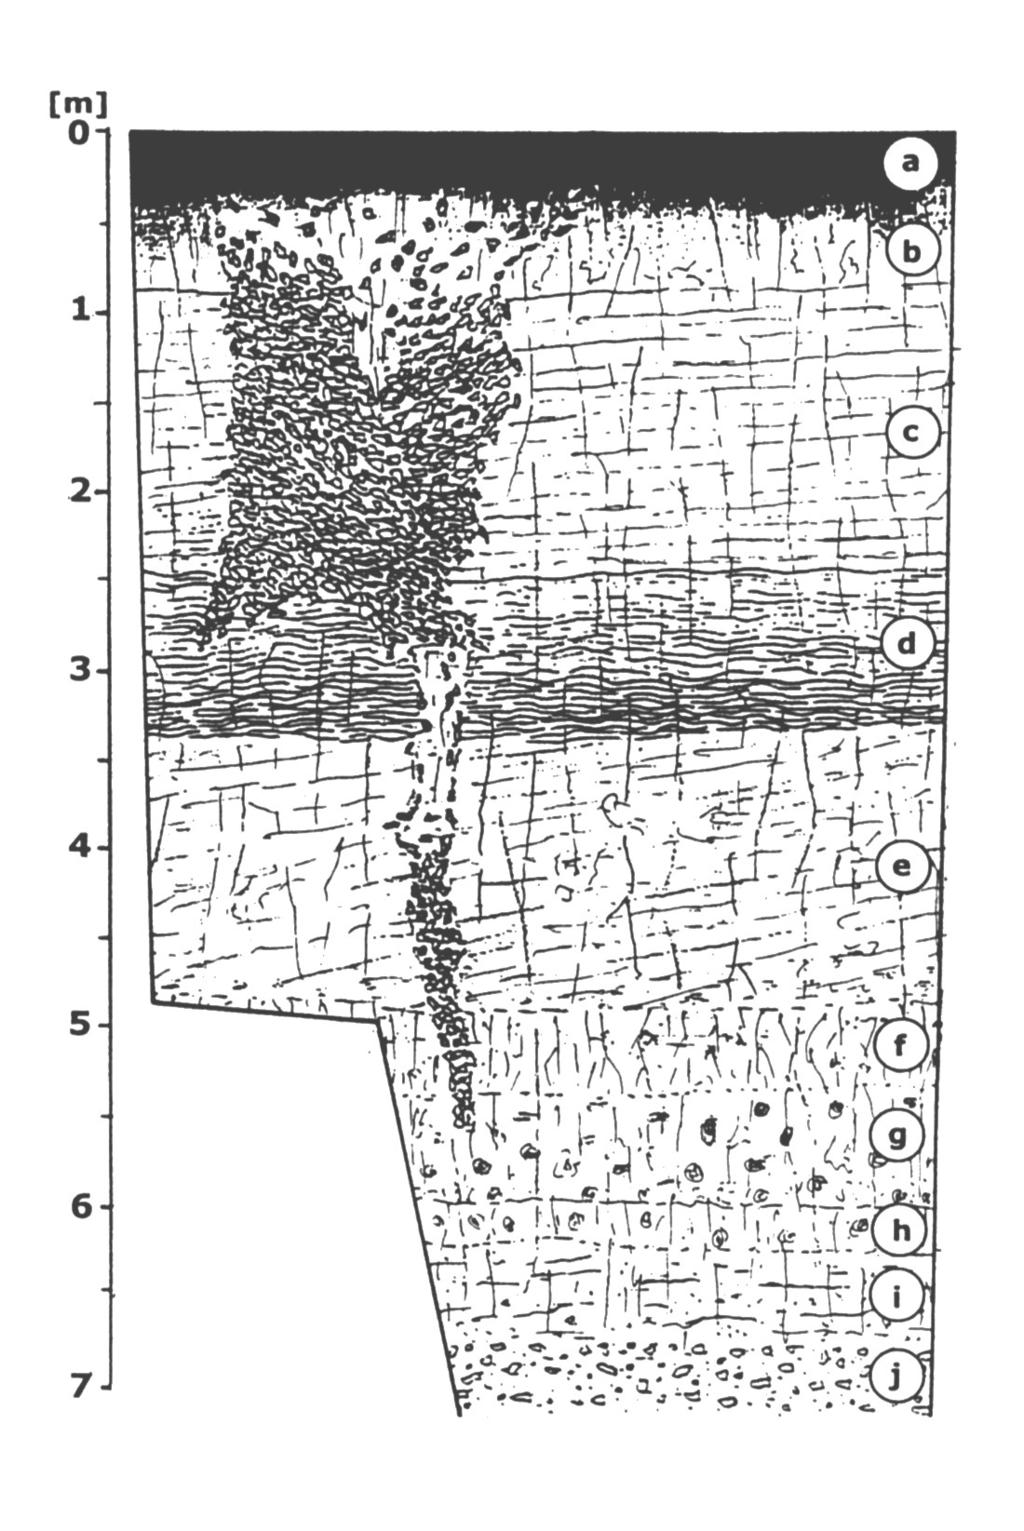 Ryc. 1 Schemat litologiczno-strukturalny odsłonięcia lessów w Złotoryi (objaśnienia w tekście).